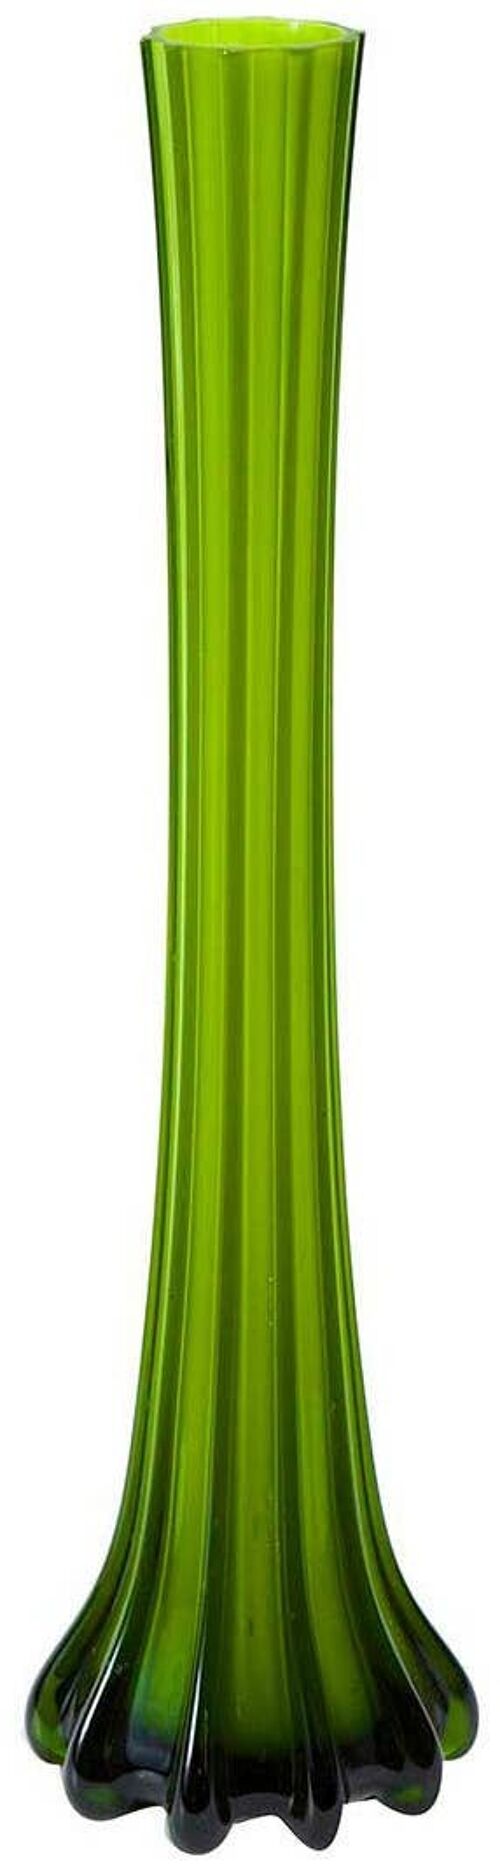 Vaso Vintage In Vetro Colorato Piccolo/verde